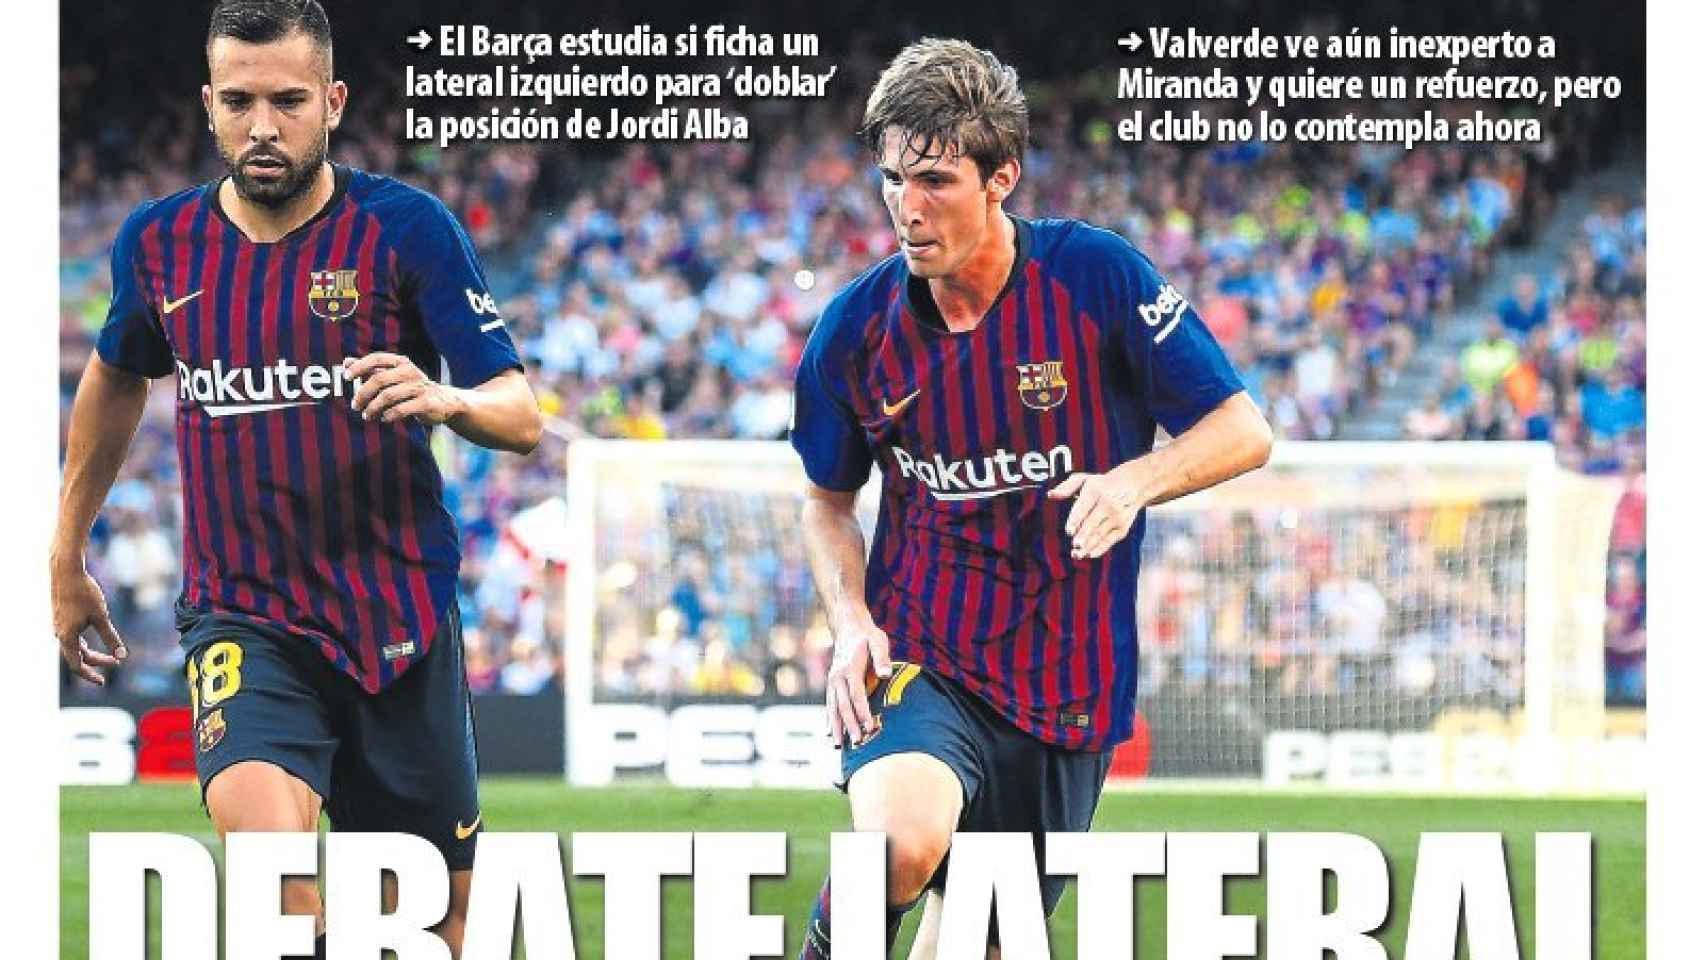 La portada del diario Mundo Deportivo (10/09/2018)